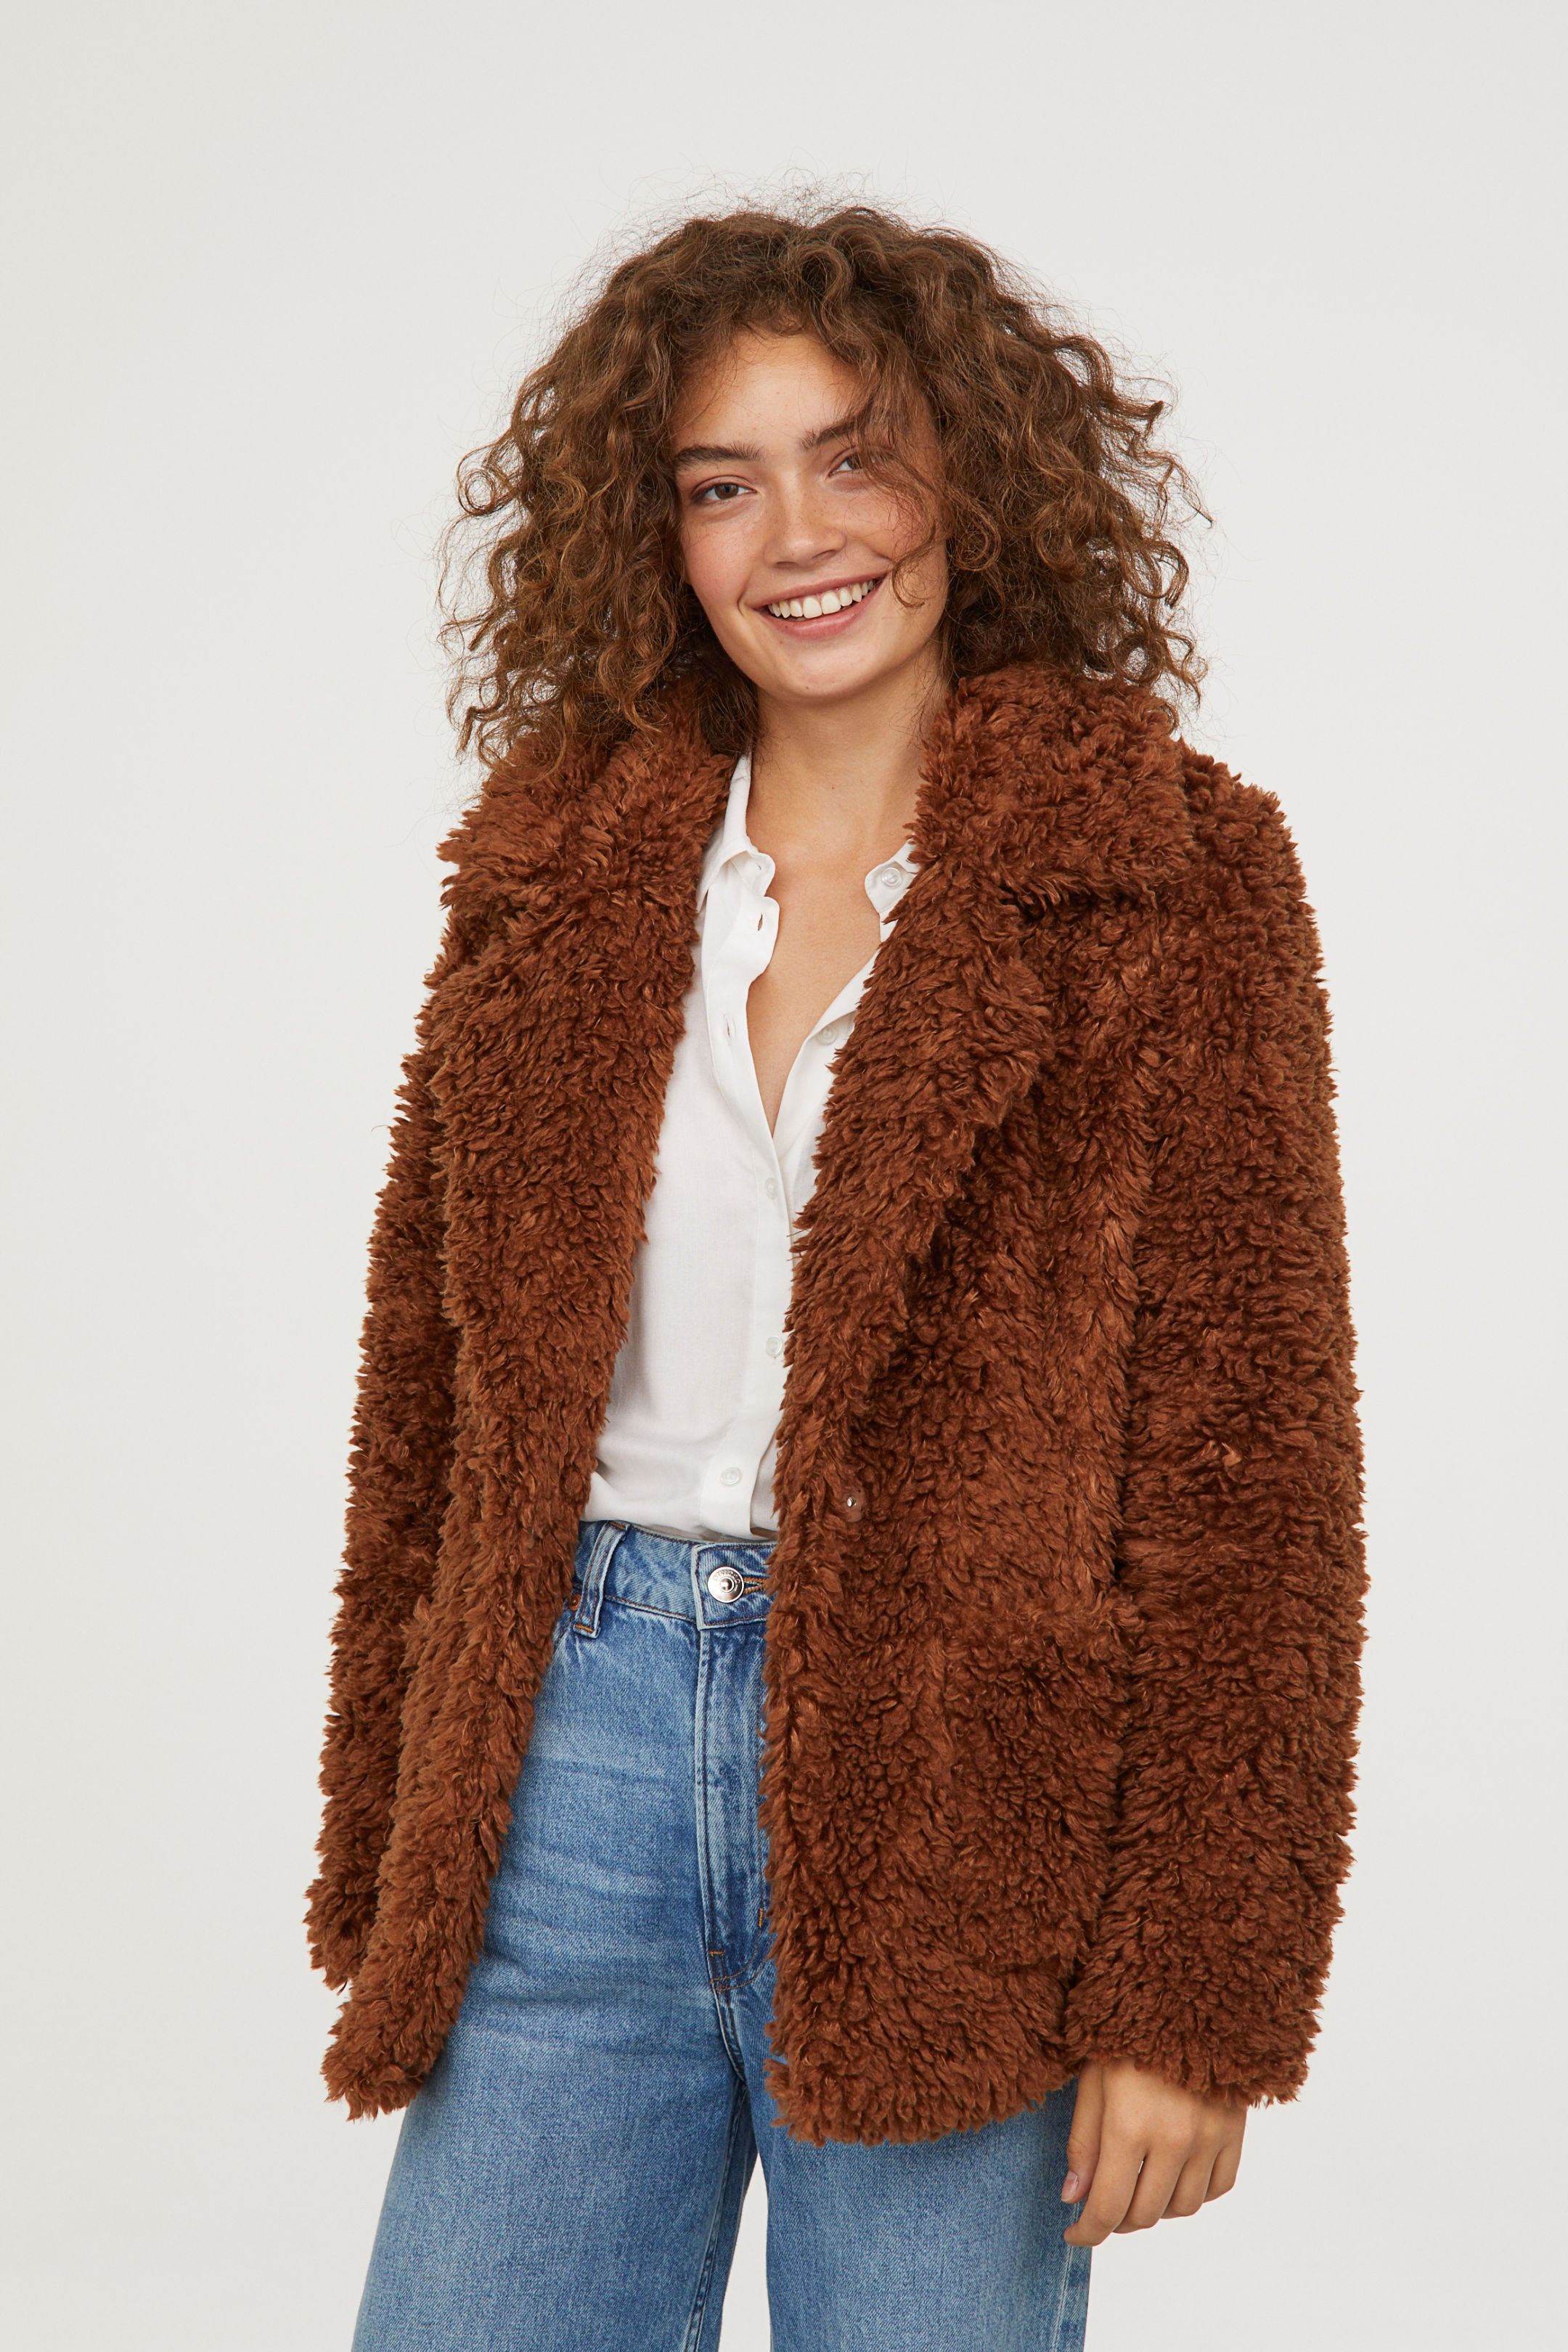 Cappotto in pelliccia finta stile teddy bear H&M a 39,99 euro